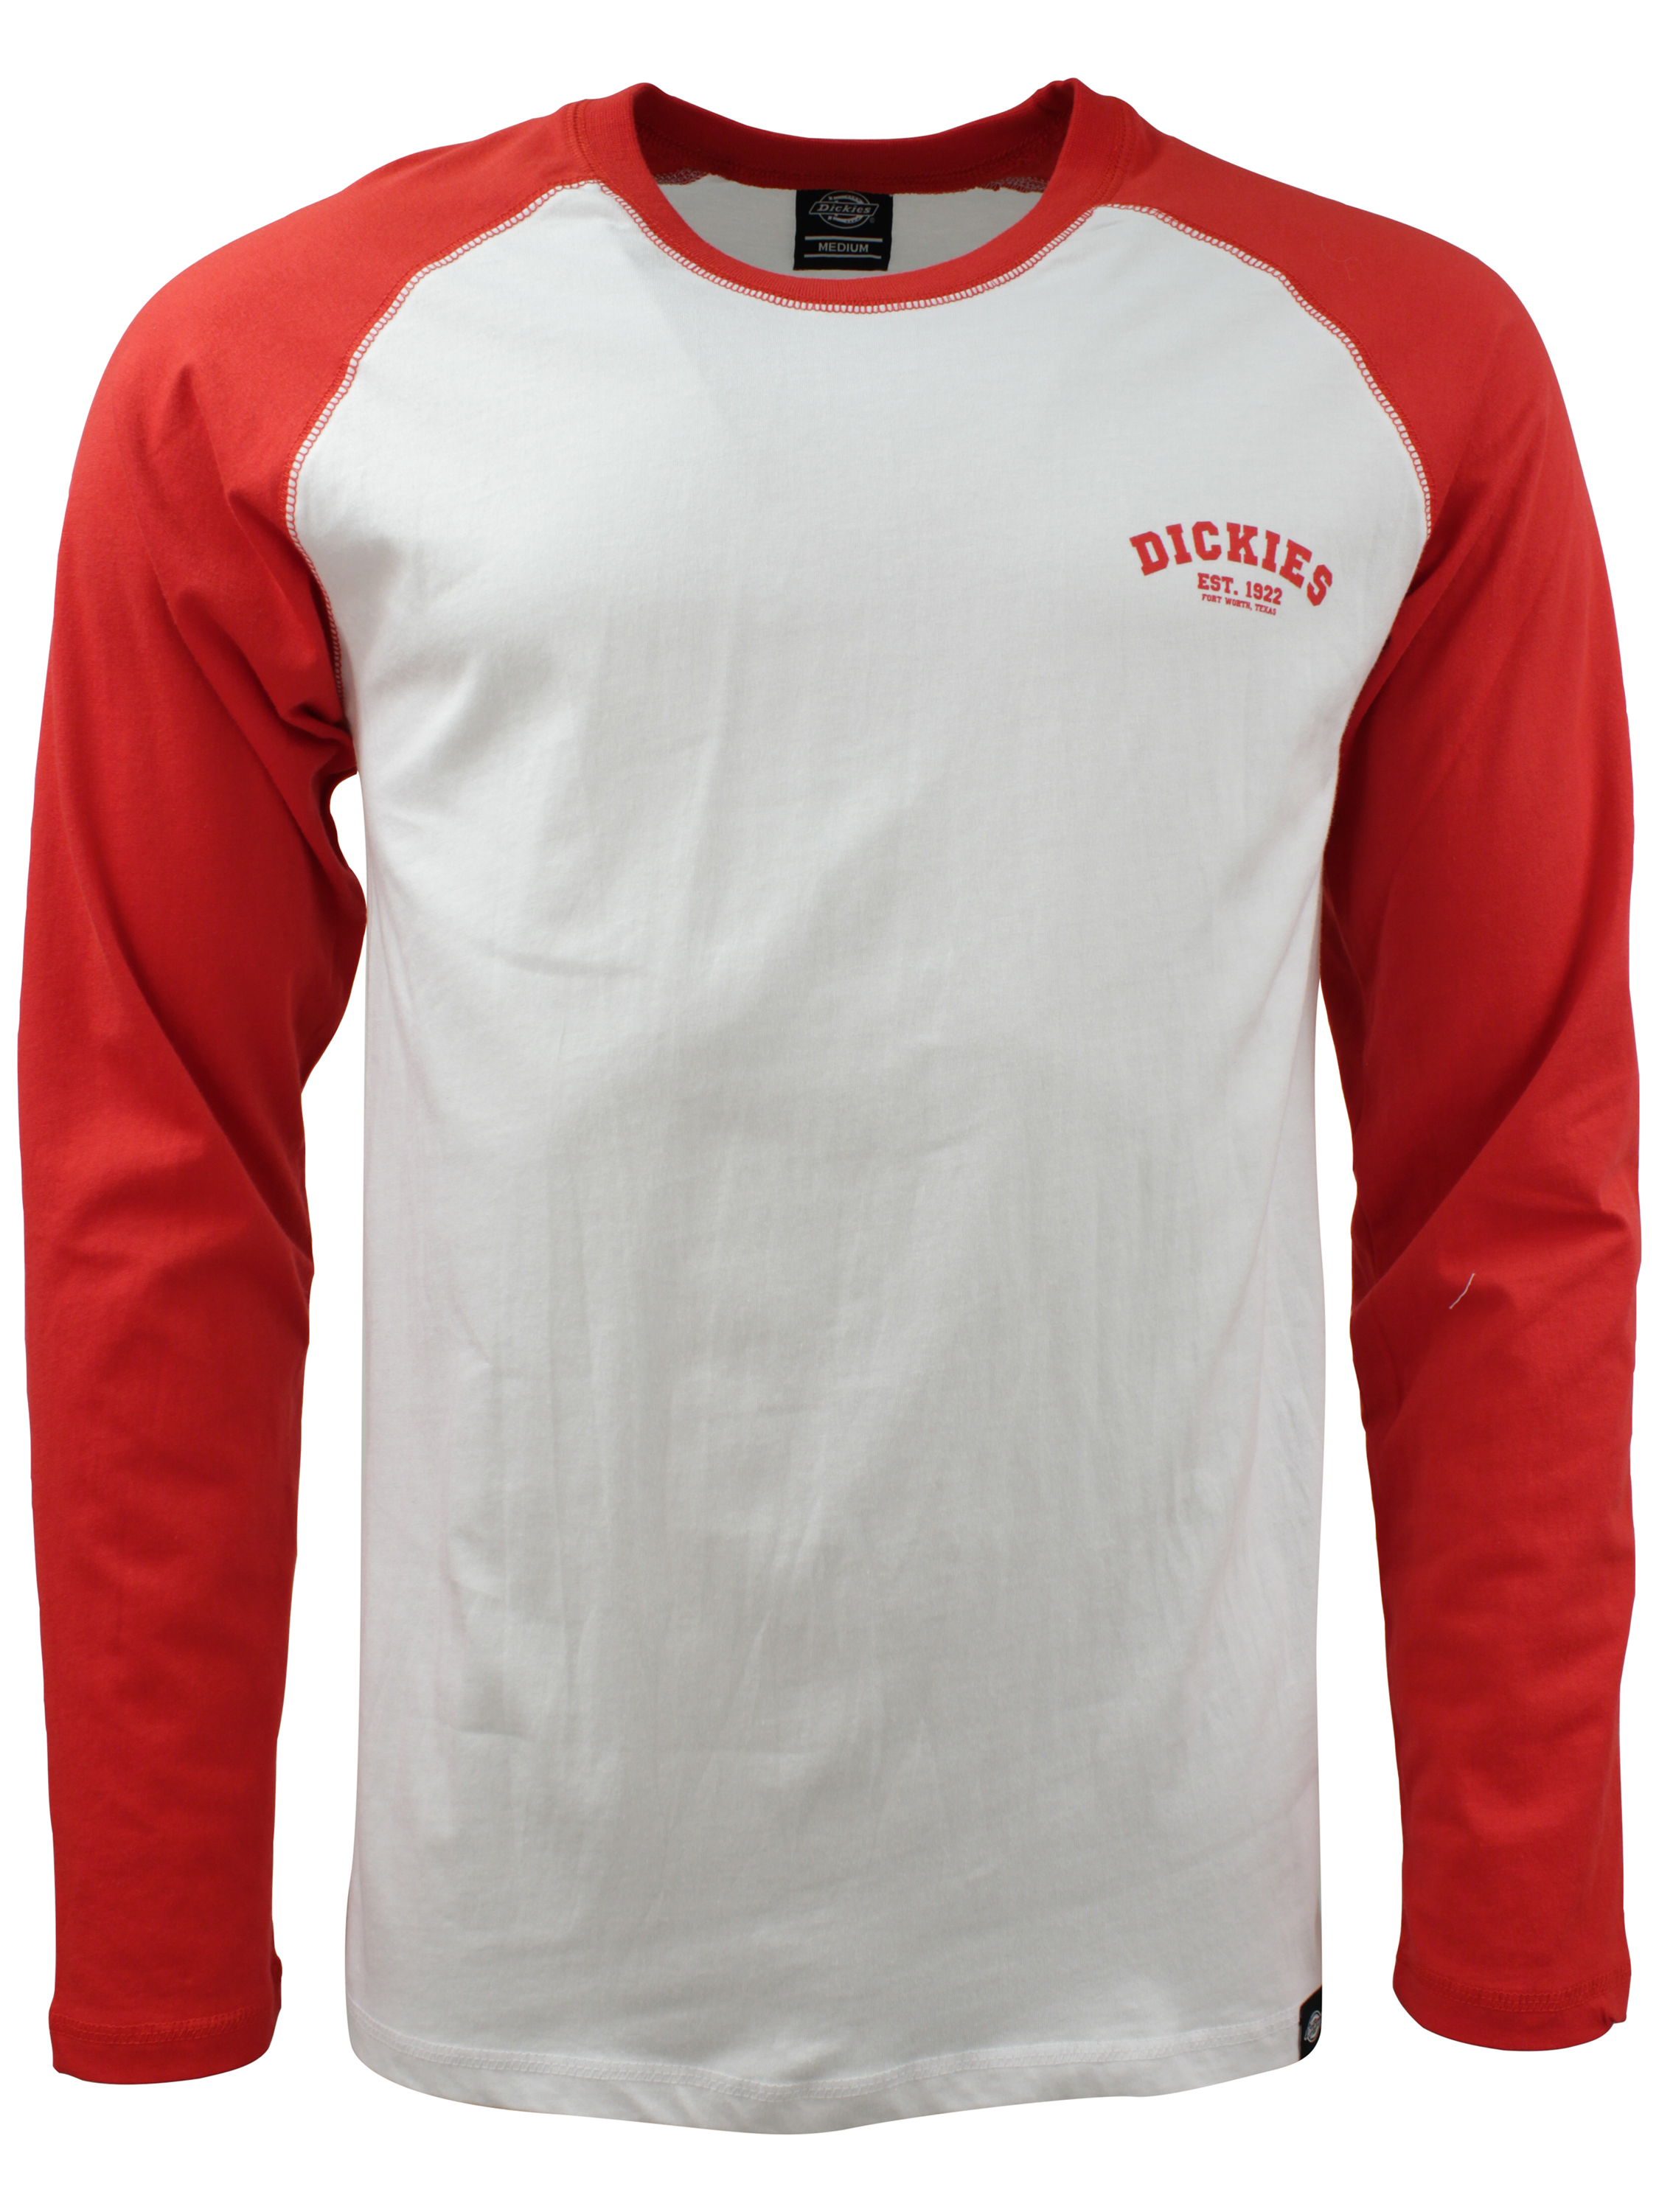 eksil Tilbageholdelse Lull Køb Dickies 'Baseball' T-shirt - Red